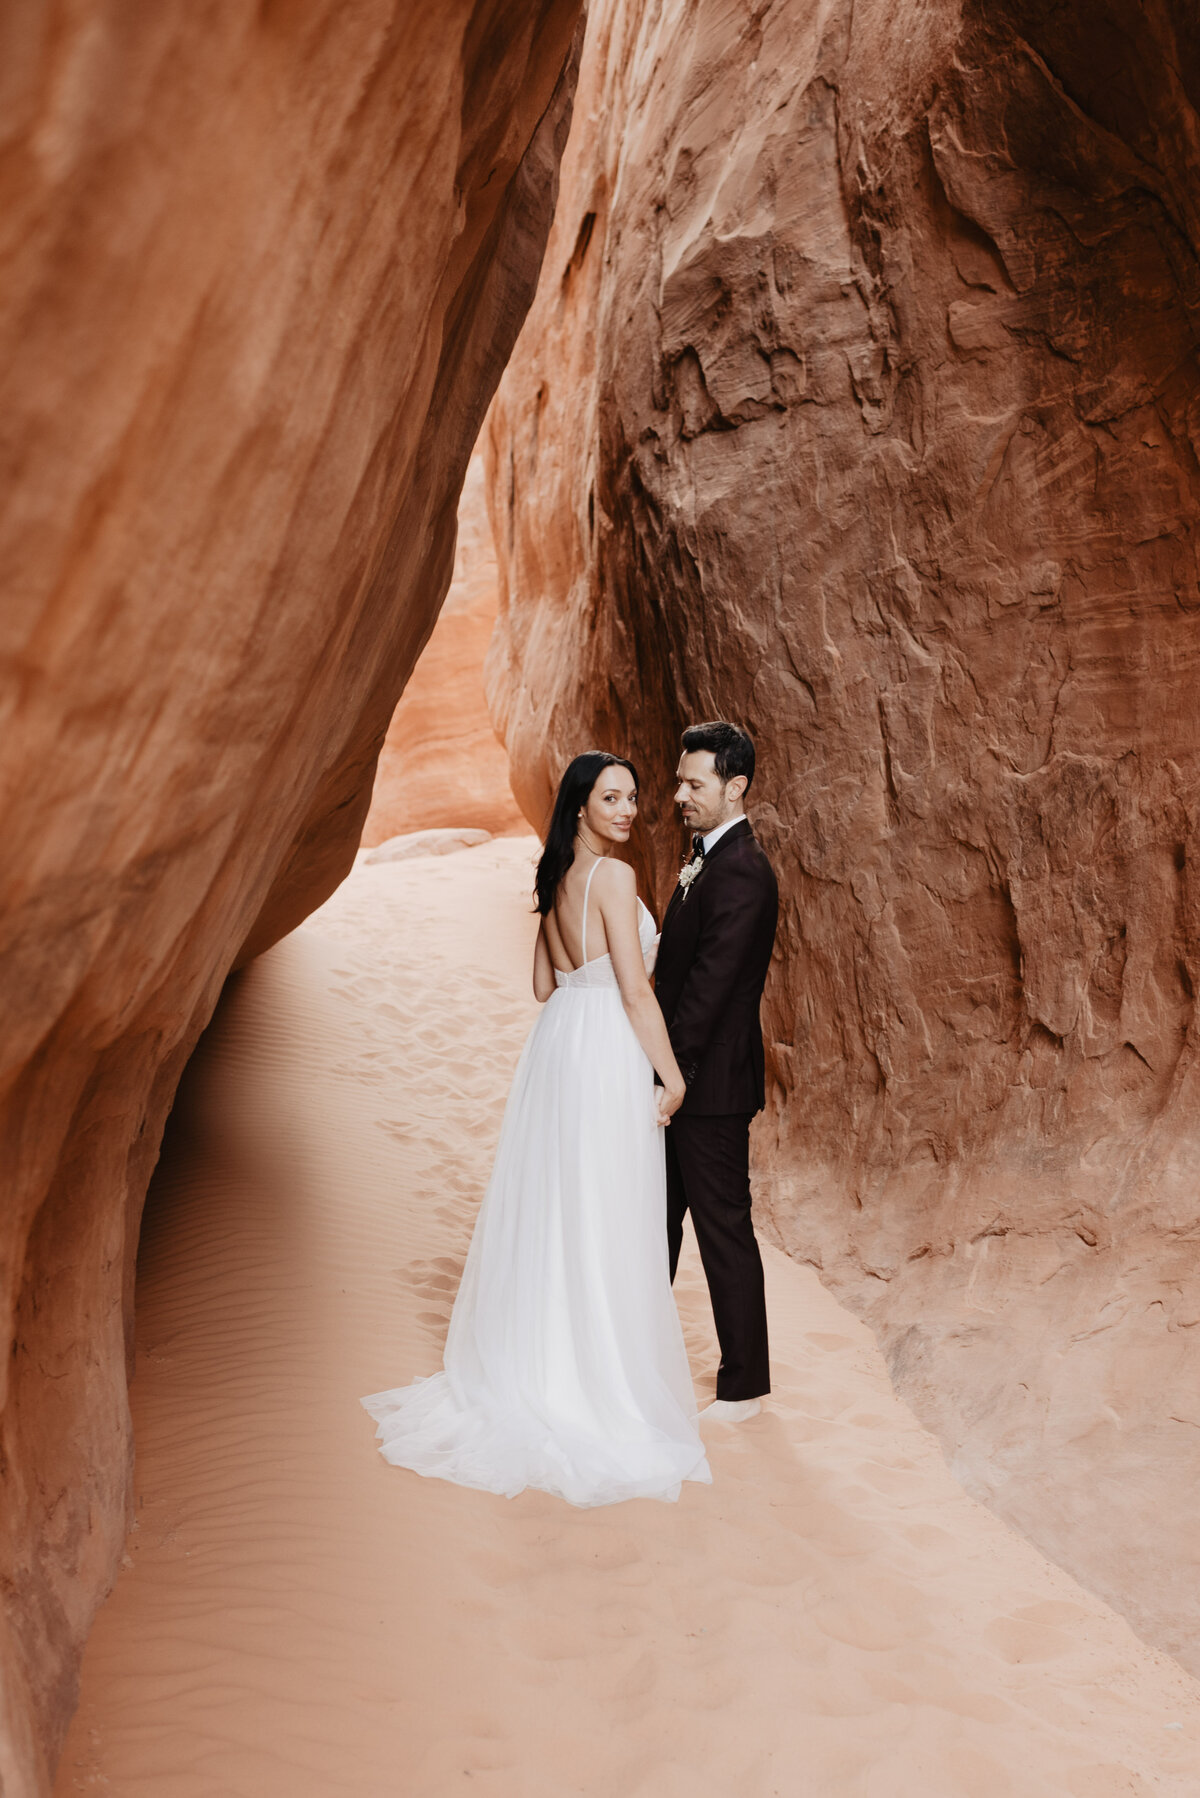 Utah elopement photographer captures bride and groom walking away